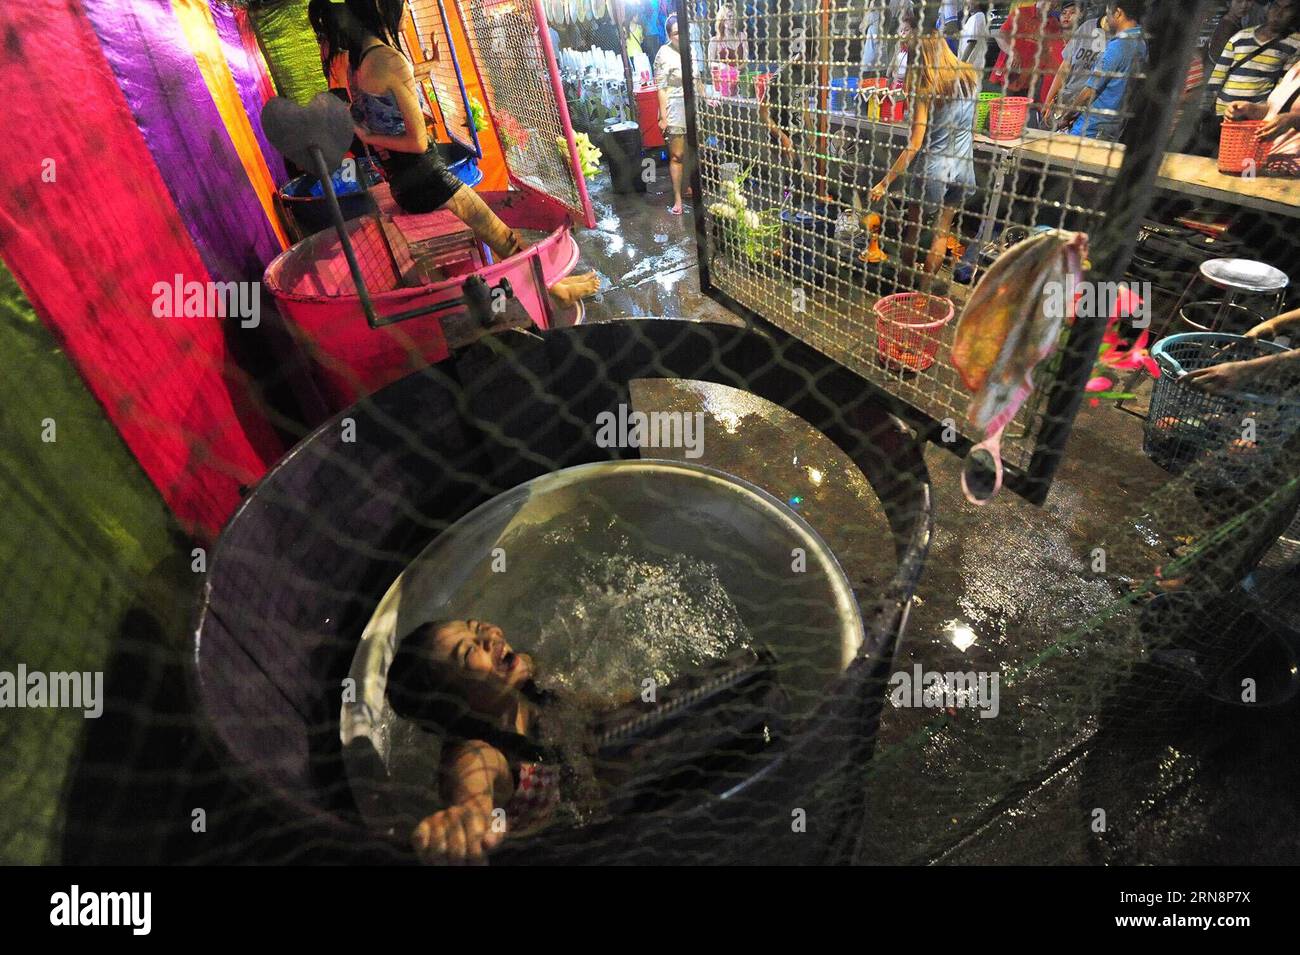 (151101) -- BANGKOK, 1. November 2015 -- Ein Dunk Tank Girl fällt in Bangkok, Thailand, 1. November 2015 ins Wasser. Ein Wassertank besteht aus einem Wassertank, über dem ein Freiwilliger auf einem zusammenfallenden Sitz sitzt. Wenn ein Ball auf ein Ziel trifft, bricht der Sitz zusammen und taucht die Person ins Wasser. ) THAILAND-BANGKOK-DUNK TANK GIRL RachenxSageamsak PUBLICATIONxNOTxINxCHN Bangkok Nov 1 2015 ein Dunk Tank Girl fällt in Wasser in Bangkok Thai Country Nov 1 2015 ein Dunk Tank besteht aus einem Tank aus Wasser, über dem ein Freiwilliger AUF einem zusammenfallenden Sitz sitzt, wenn ein Ball AUF ein Ziel trifft der Sitz kollabiert und die Person in Stockfoto